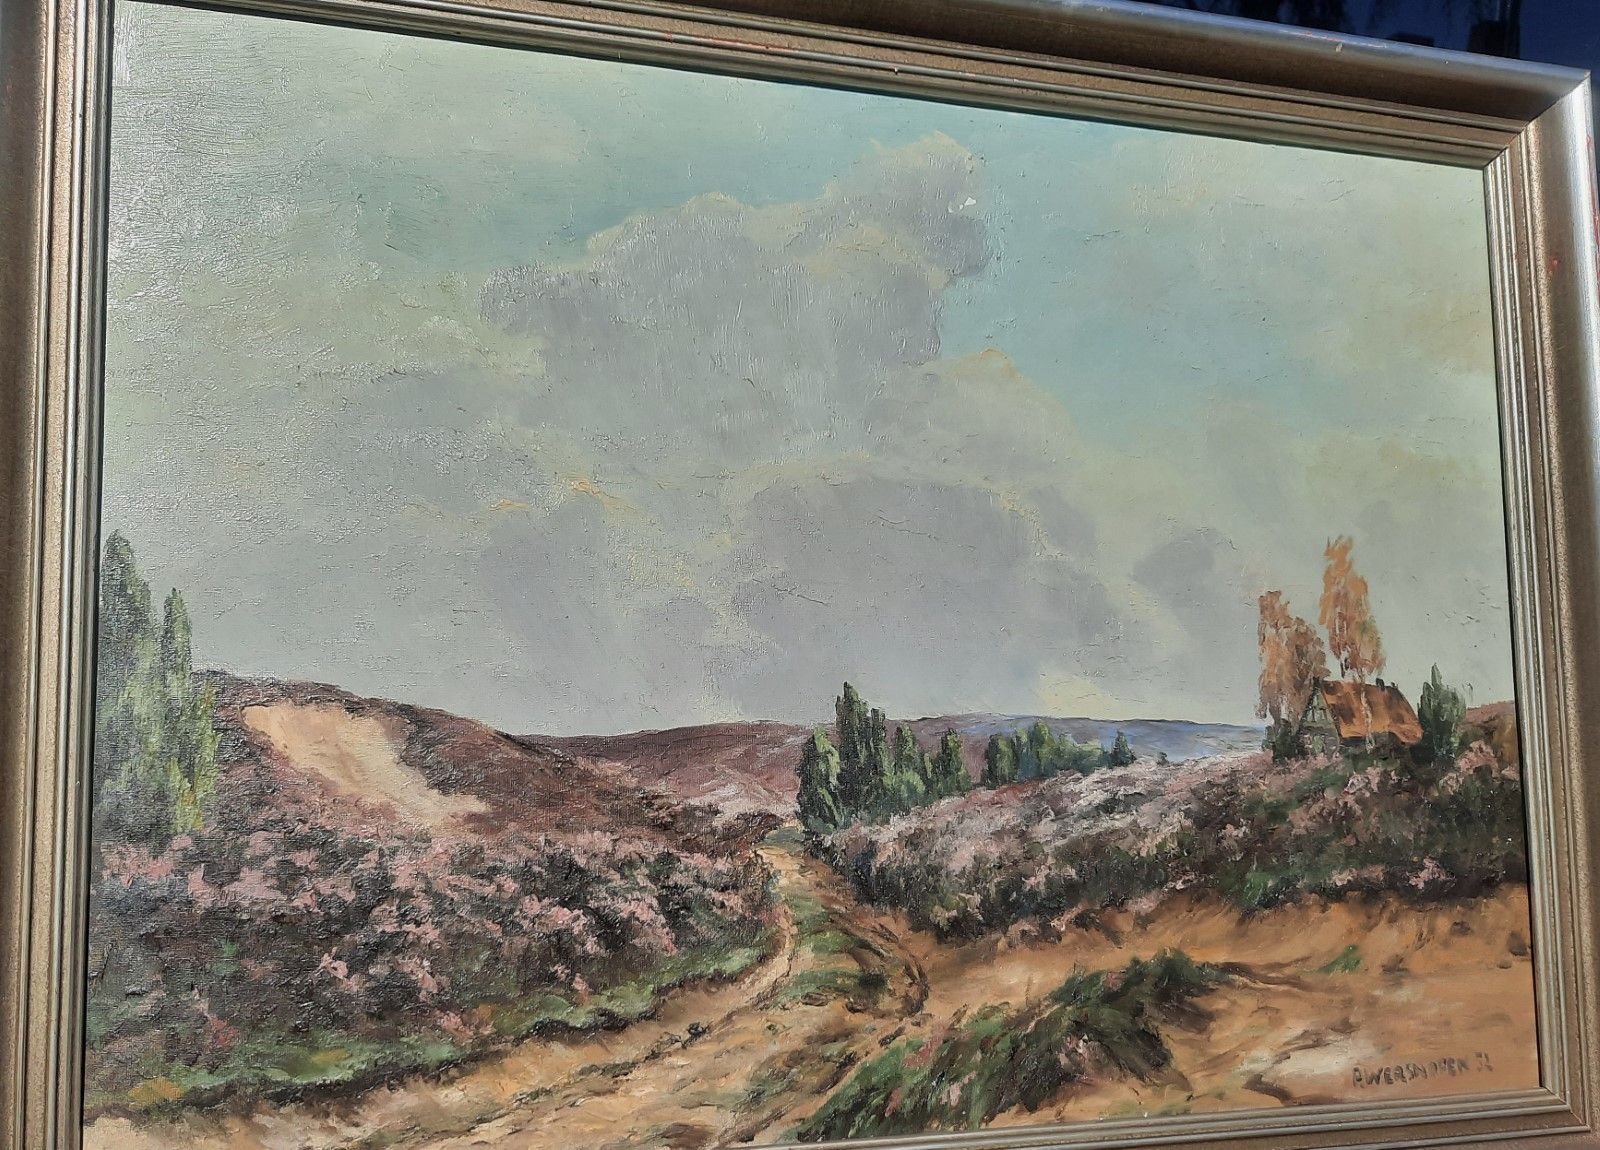 Null "Paysage de lande",huile sur toile,signé Wershofen,daté 1952,env.50x70cm